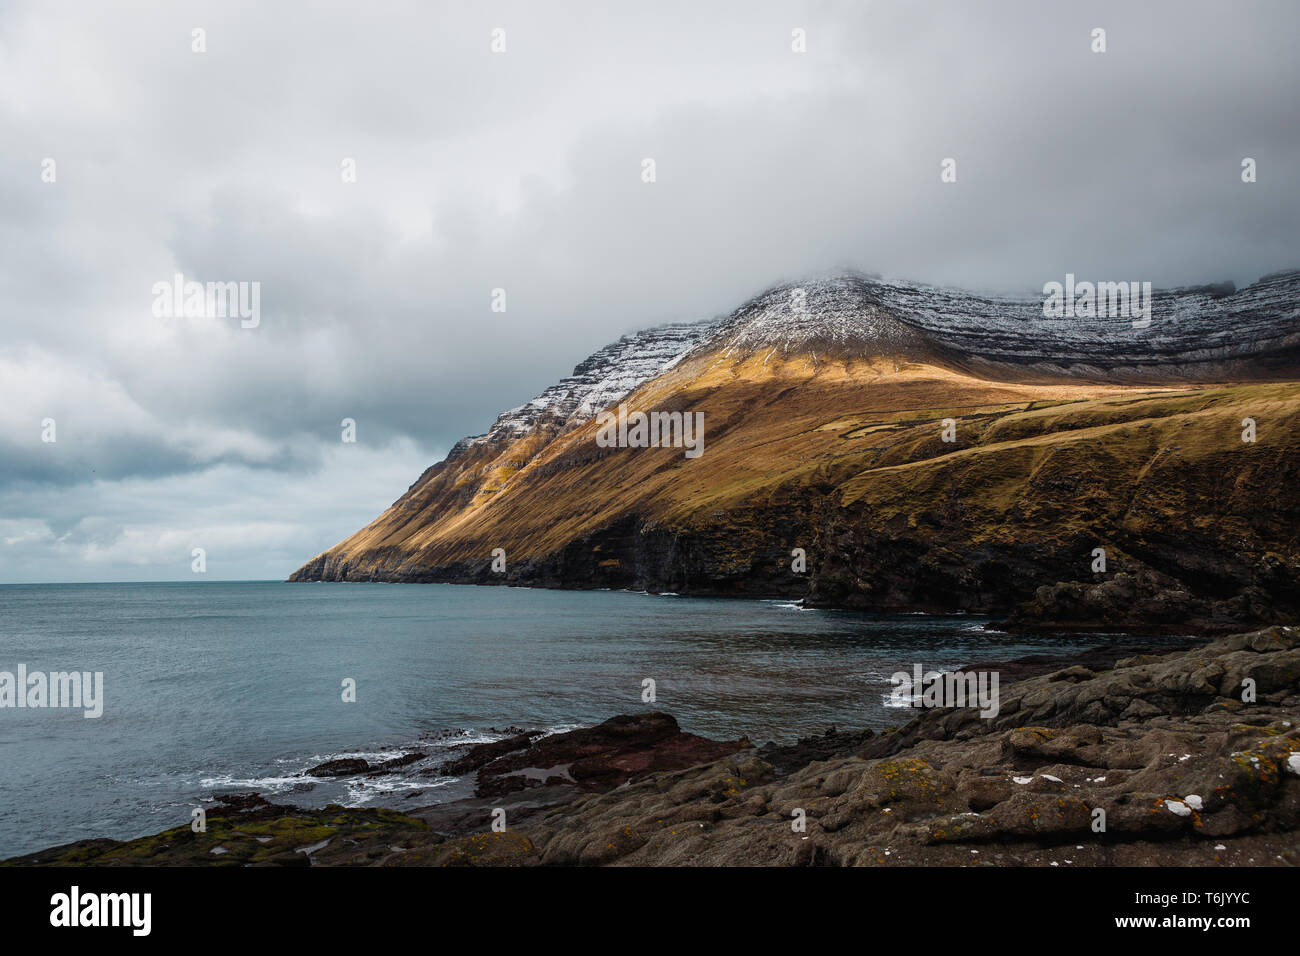 Les falaises côtières de la Kap Enniberg dans Viðareiði avec pics couverts de neige et de brouillard dans le matériel roulant, de l'Atlantique (îles Féroé, Danemark, Europe) Banque D'Images